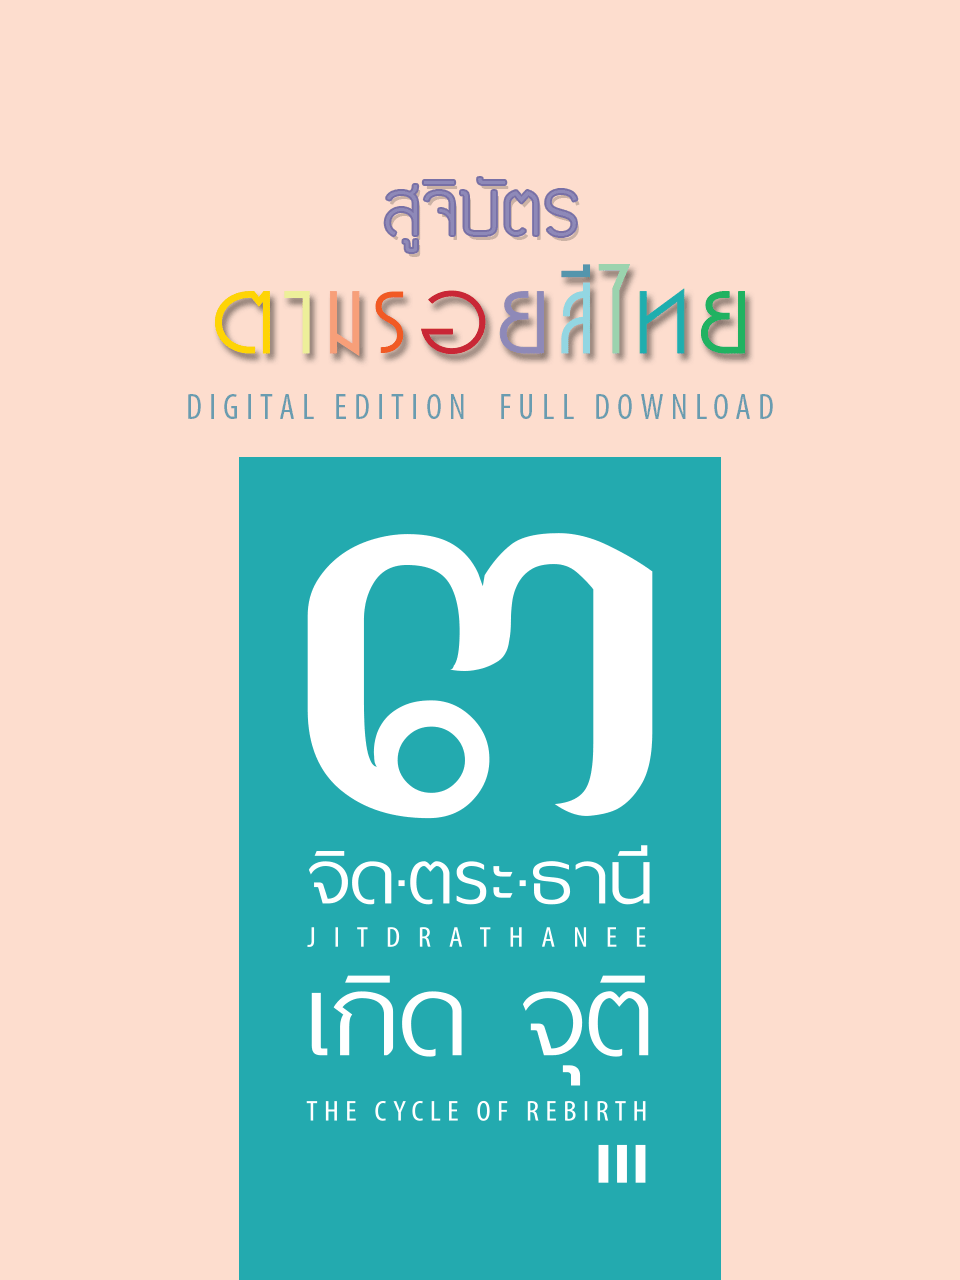 สูจิบัตร #ตามรอยสีไทย Digital Full Version